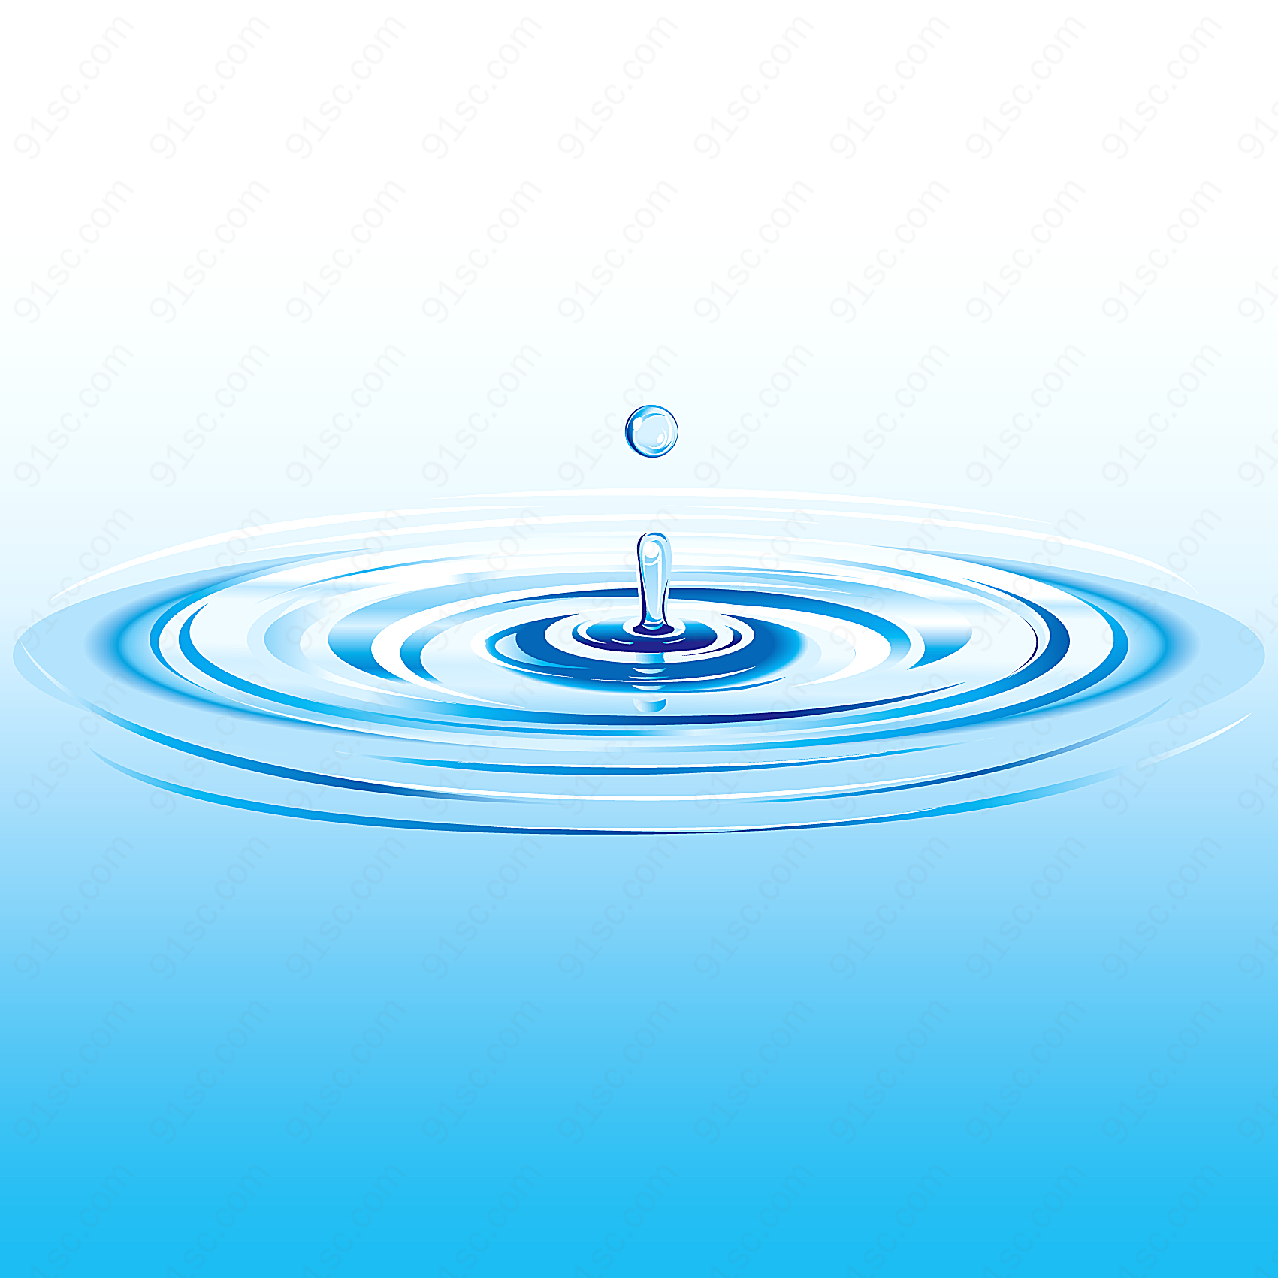 水主题矢量素材矢量自然元素